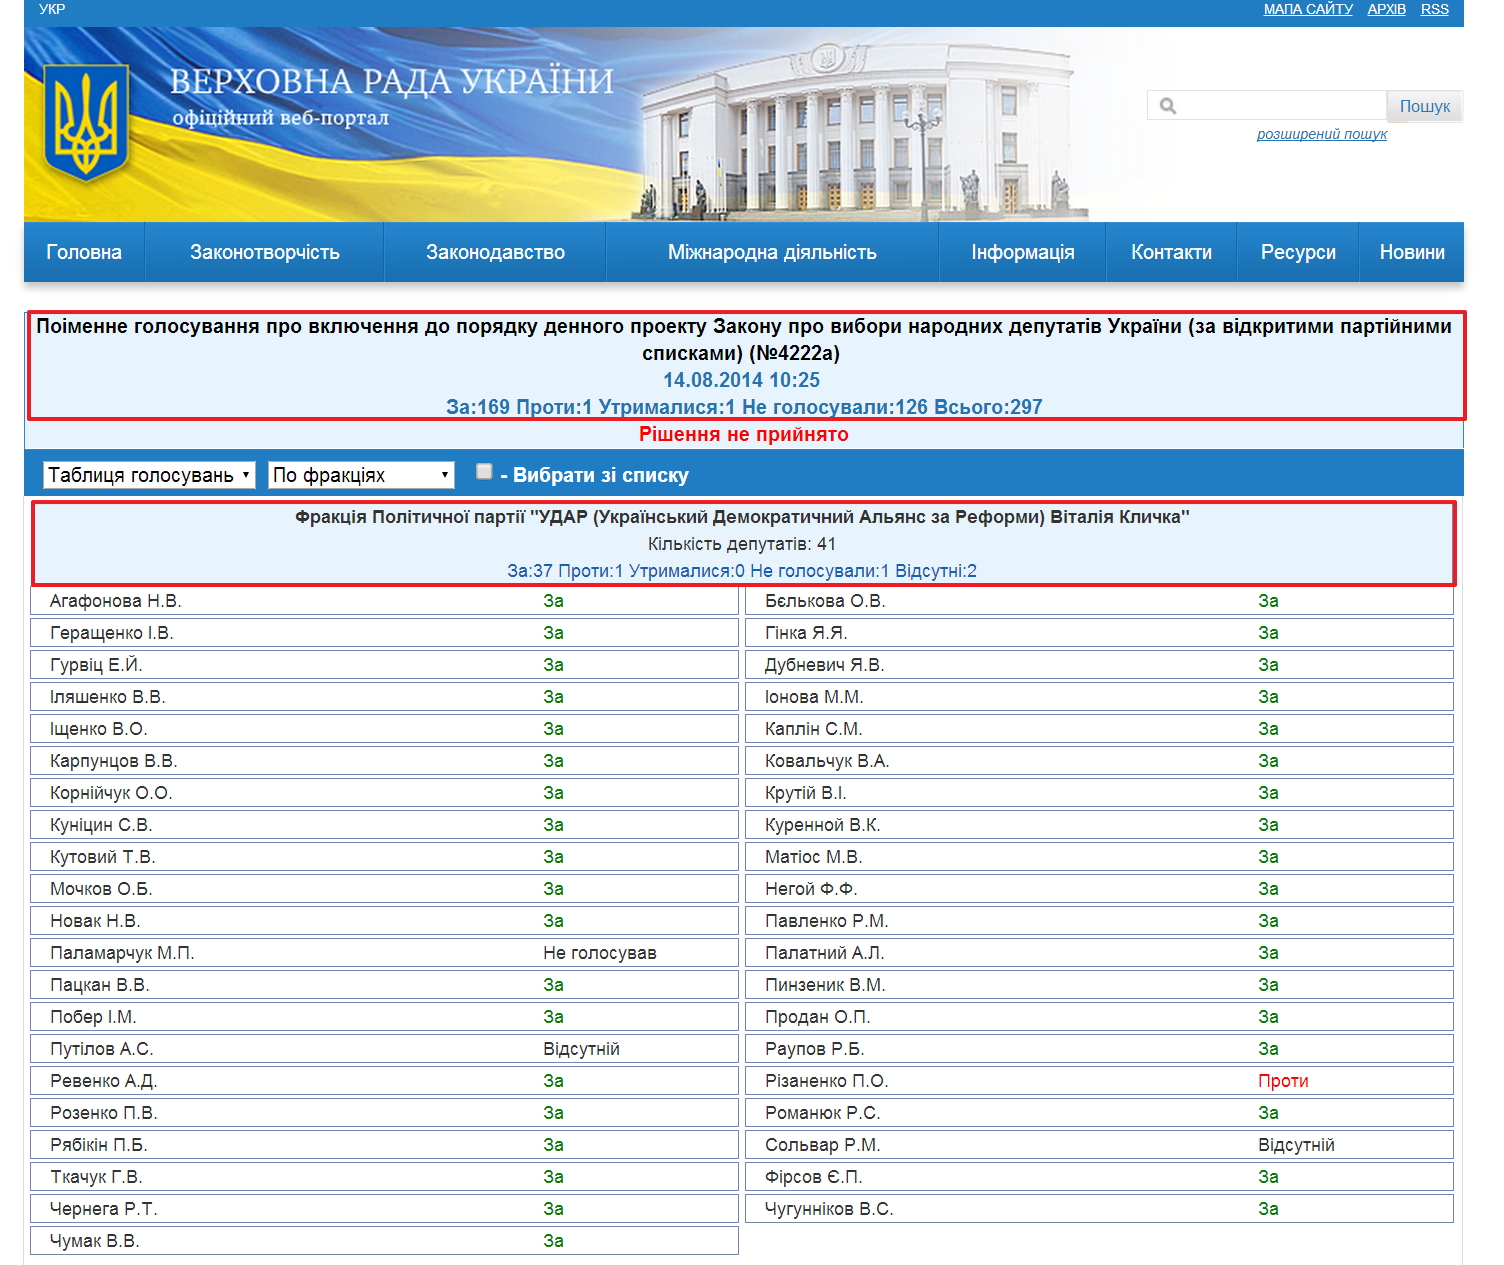 http://w1.c1.rada.gov.ua/pls/radan_gs09/ns_golos?g_id=6240